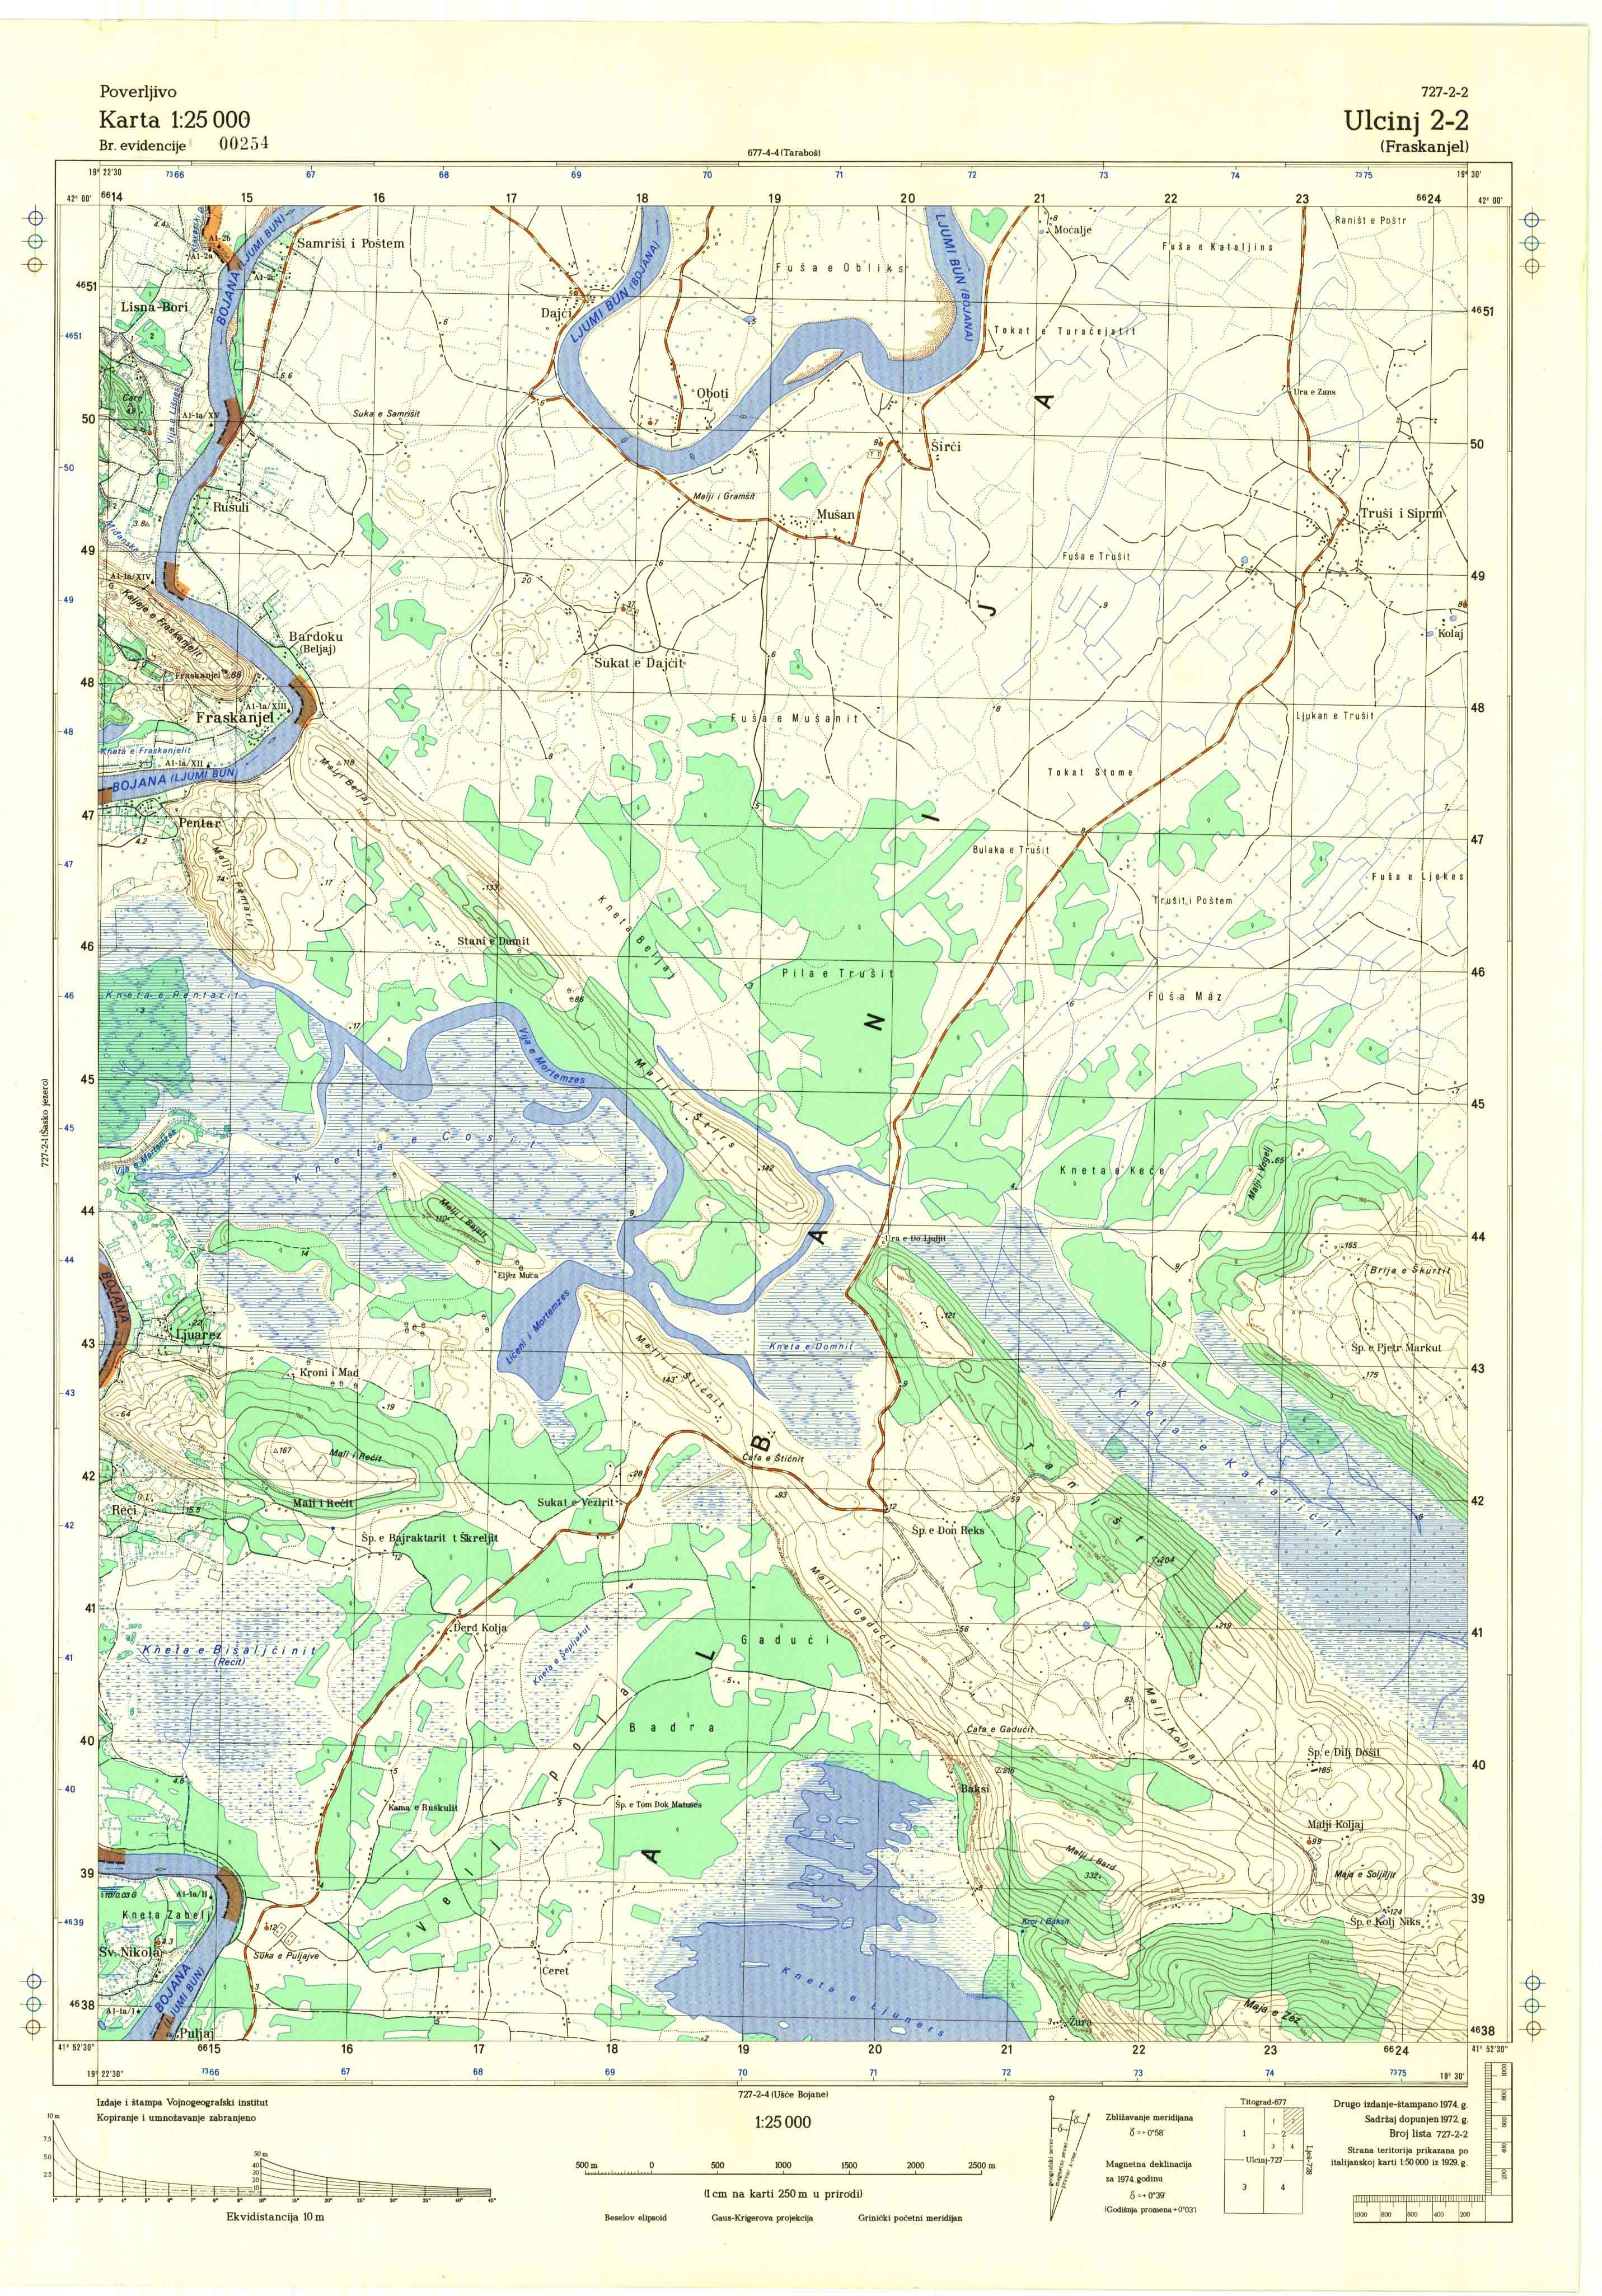  topografska karta crne gore 25000 JNA  Ulcinj